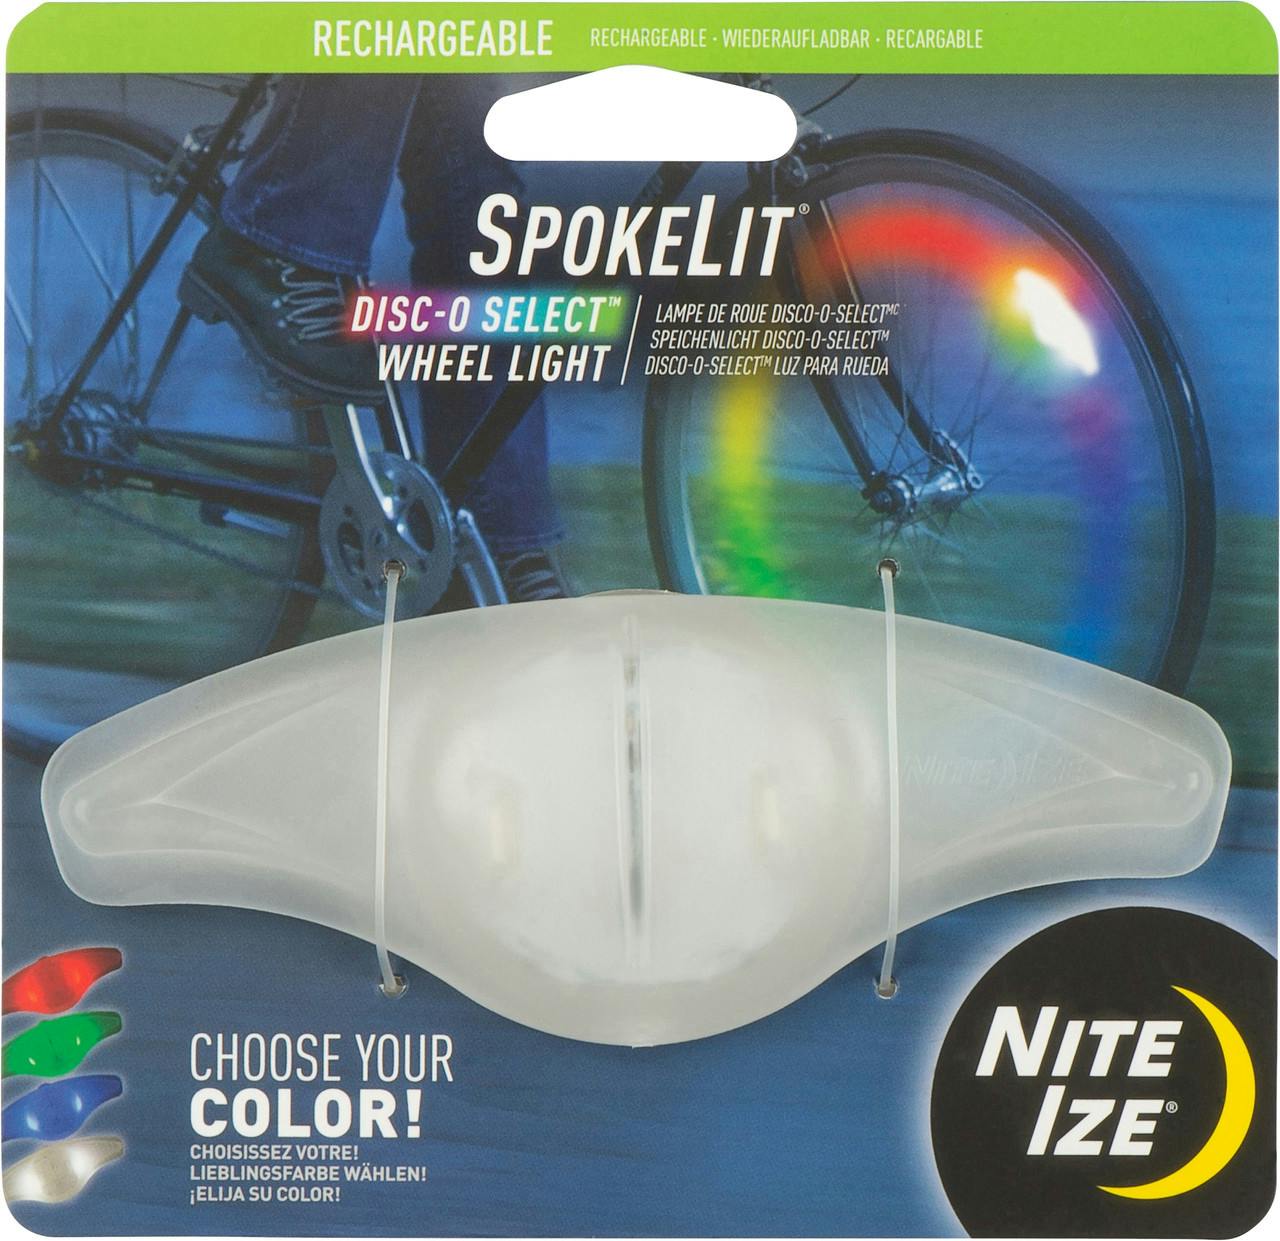 SpokeLit Rechargeable Wheel Light Disc-O Sele NO_COLOUR